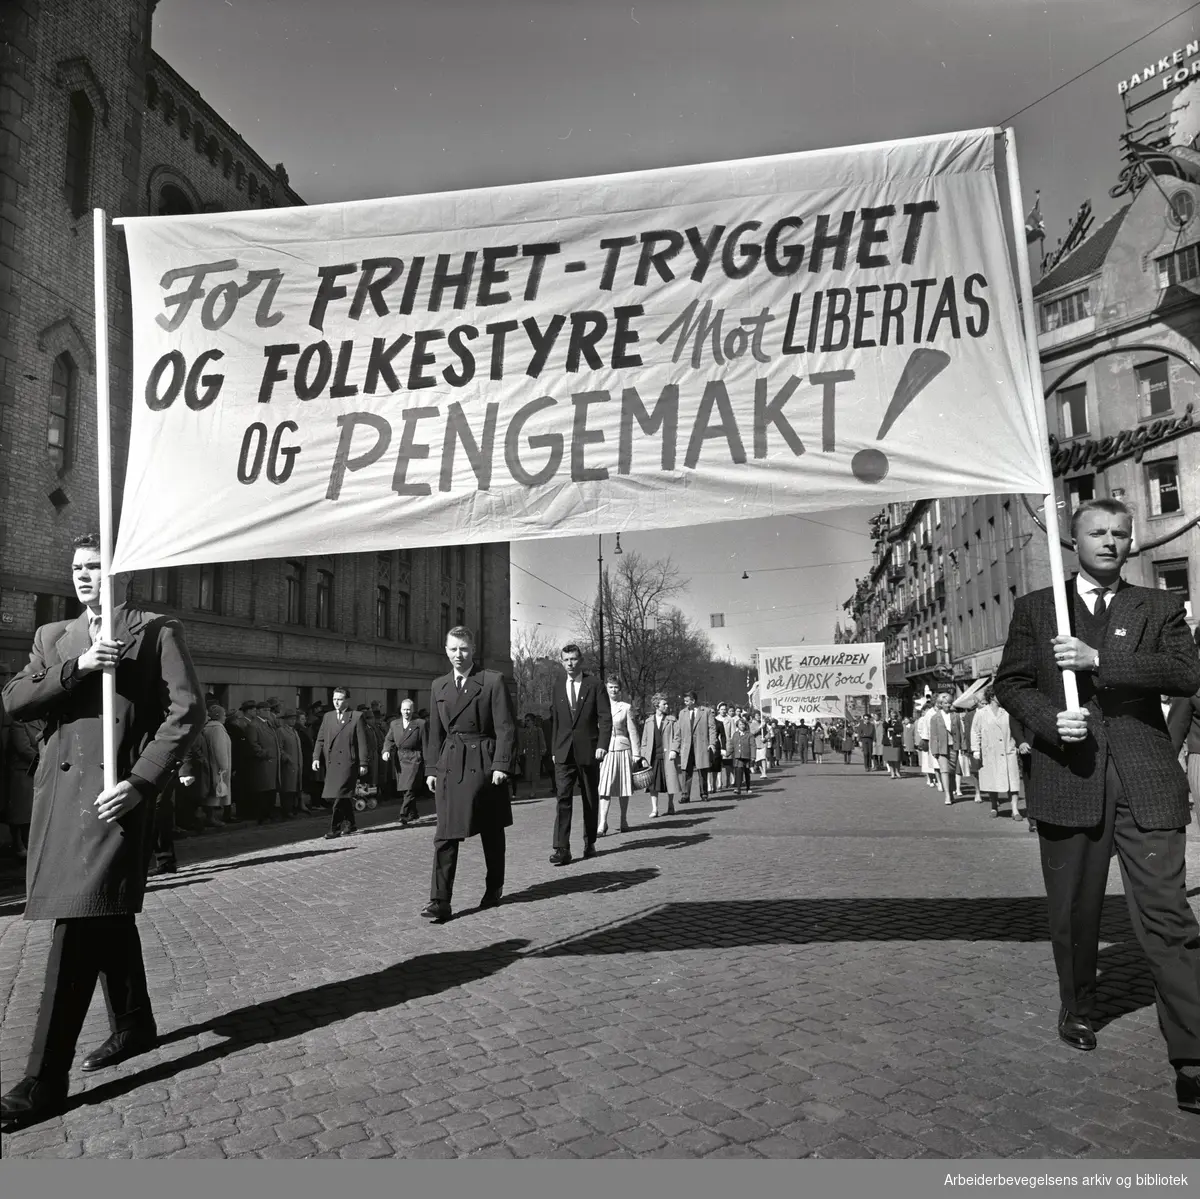 1. mai 1960 i Oslo.Karl Johans gate..Demonstrasjonstoget..Parole: For frihet - trygghet og folkestyre mot Libertas og pengemakt!.